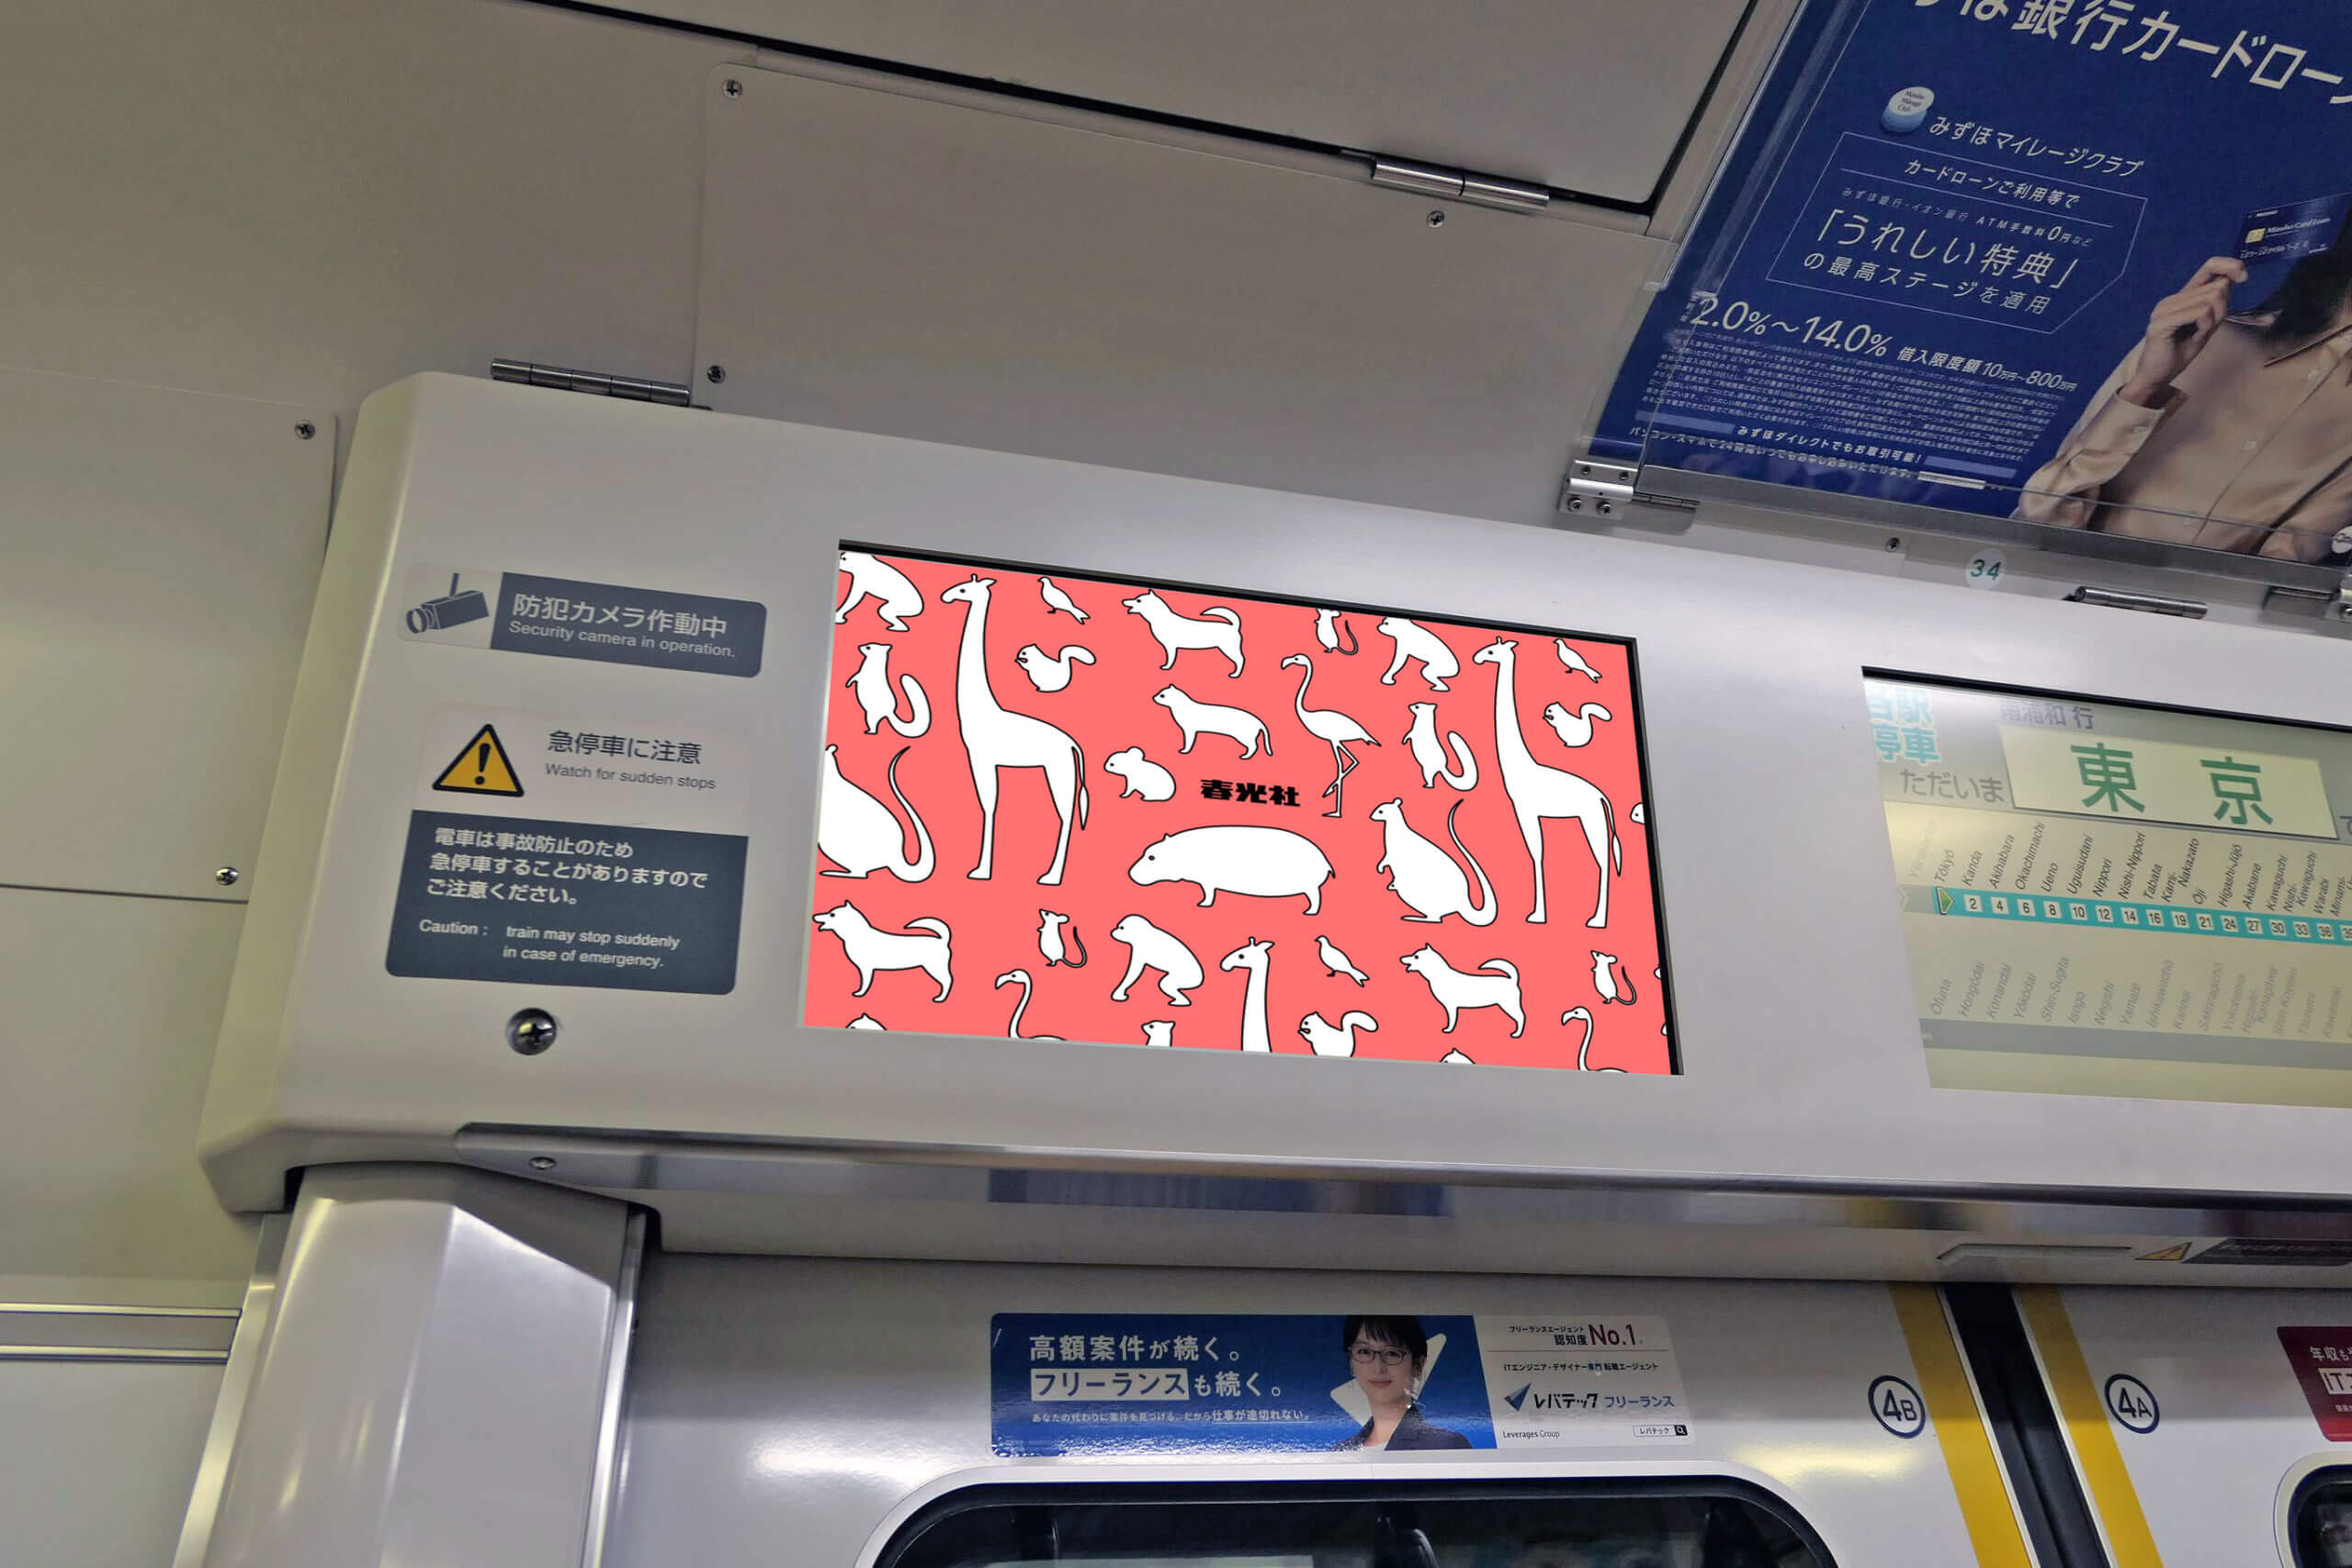 Jr東日本 電車デジタルサイネージ トレインチャンネル女性専用車スポット15cm 株式会社春光社 交通広告代理店